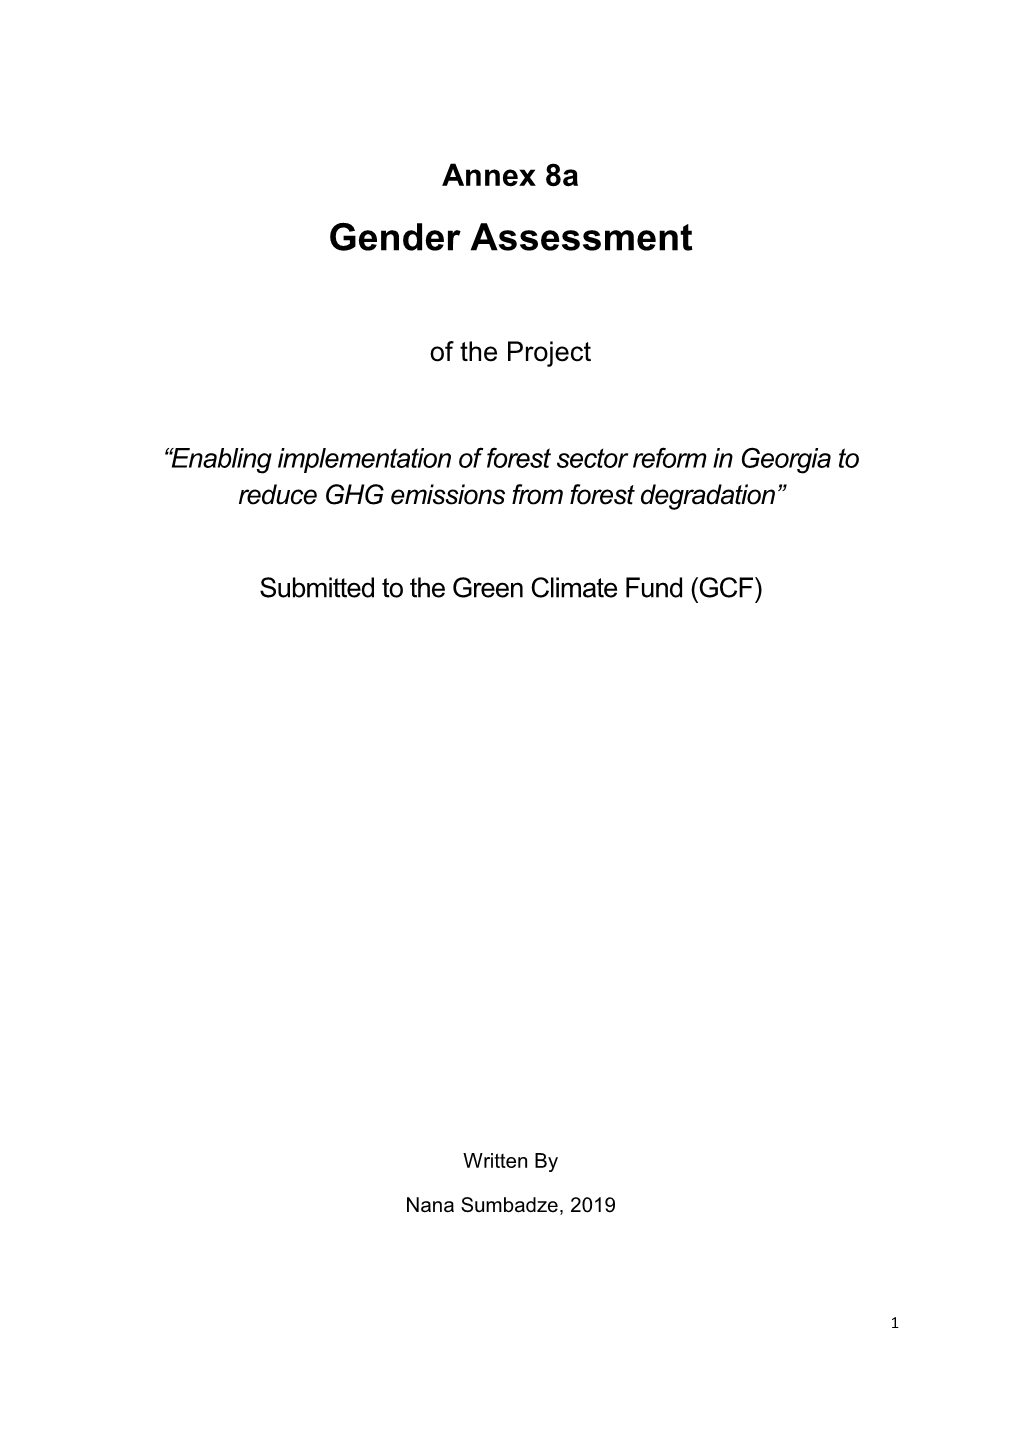 Gender Assessment